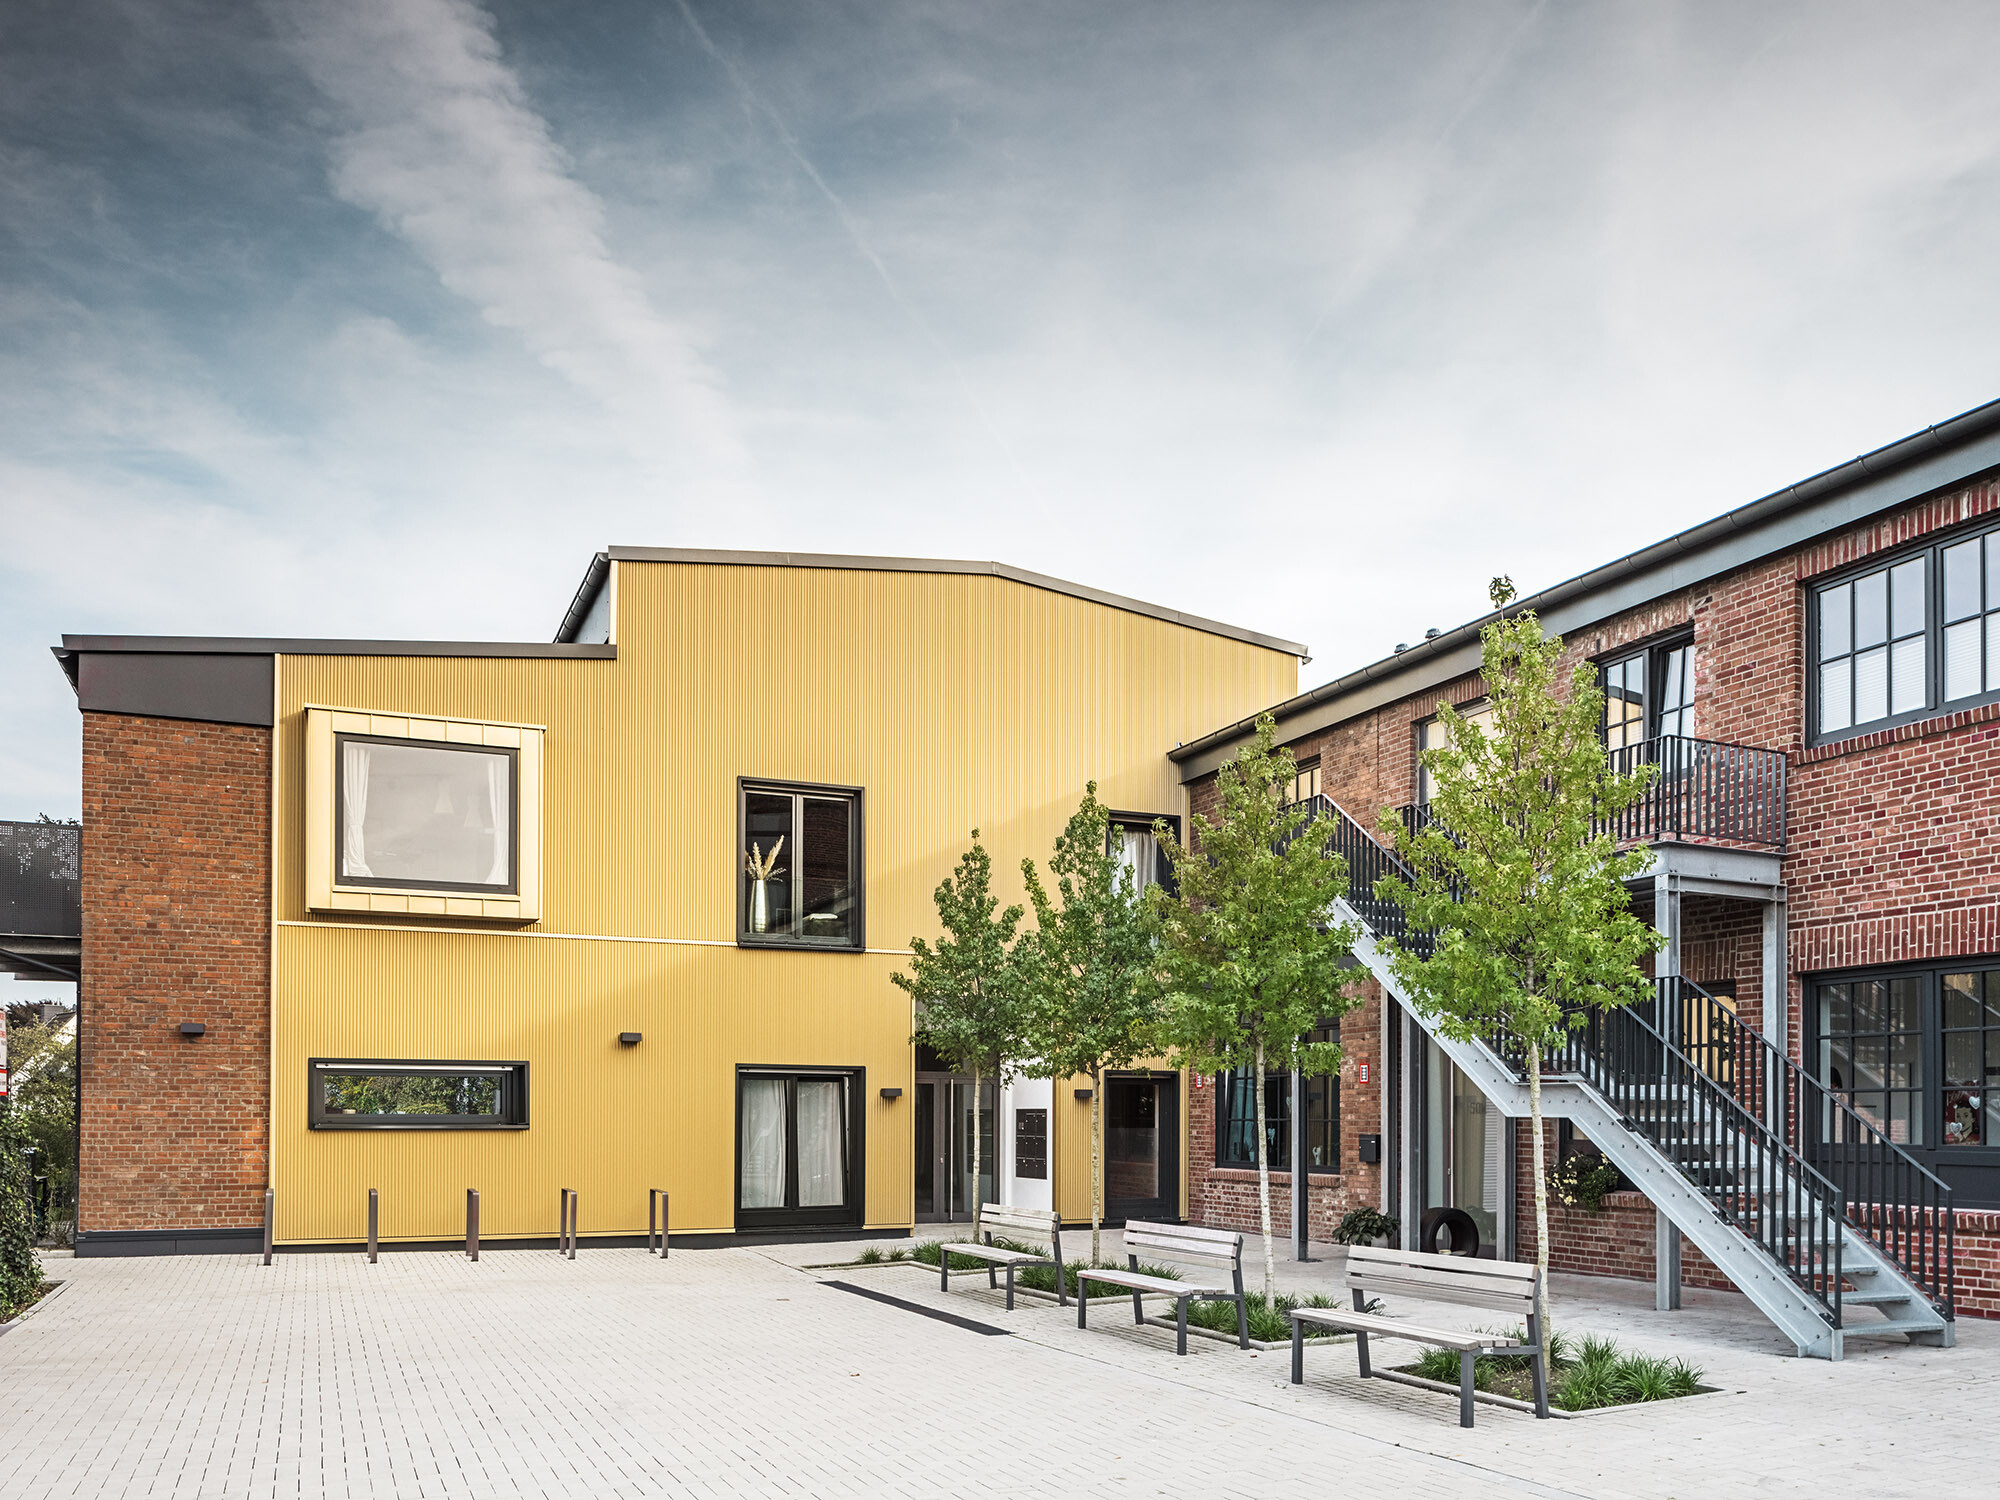 Un coup d'œil sur le site des Kellerhöfe avec les façades en briques et en aluminium de l'ancien bâtiment de l'usine.